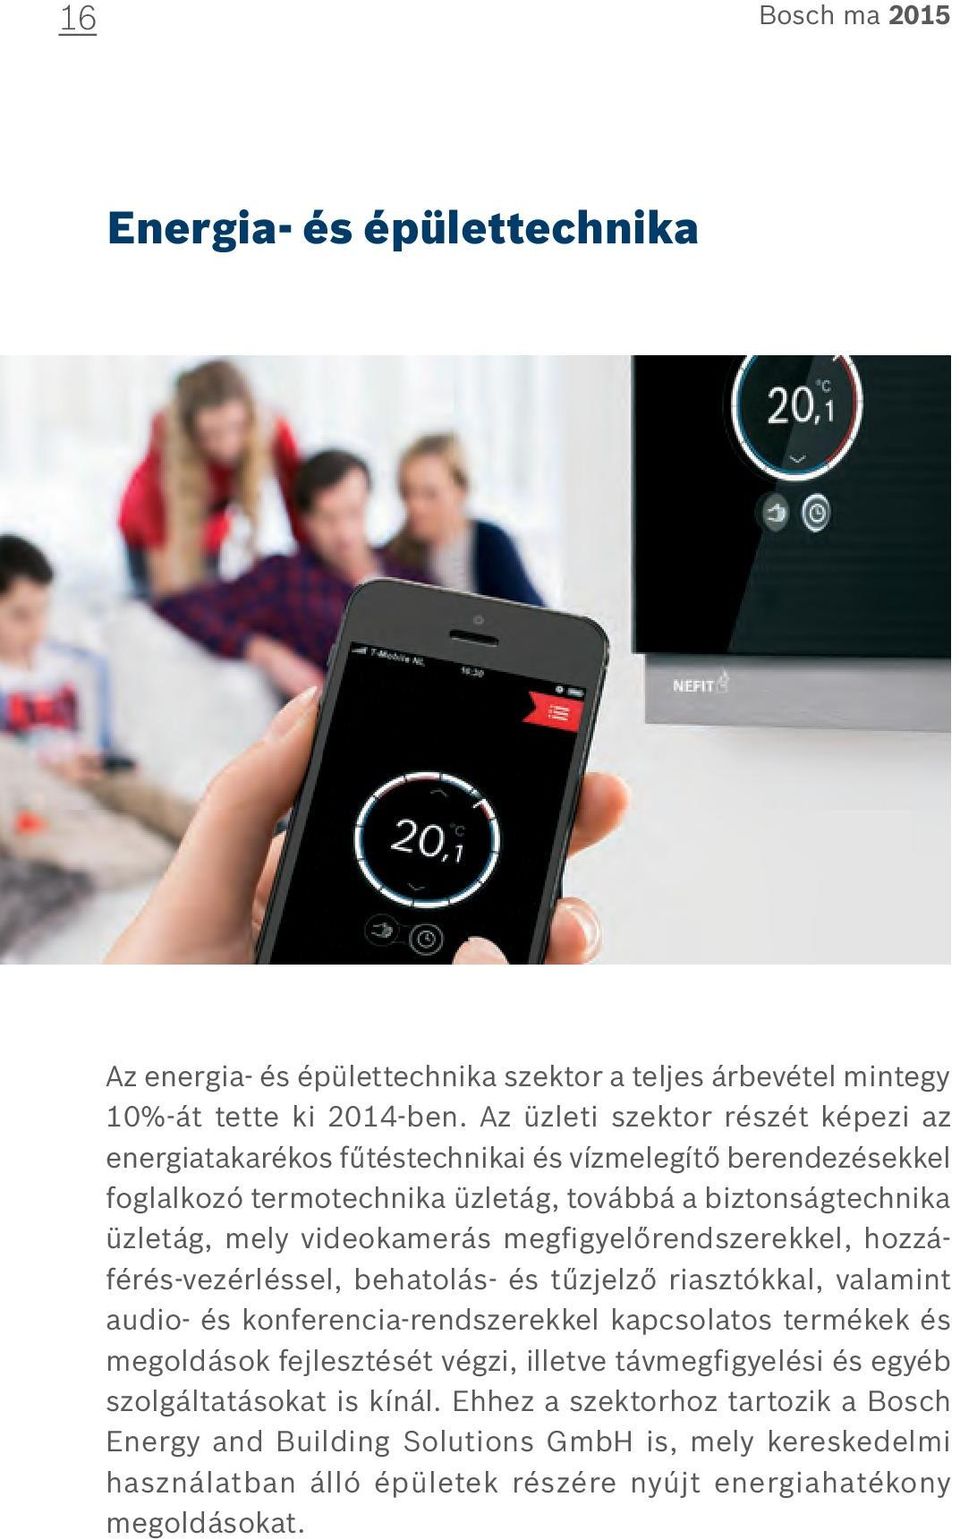 Élet minőség Bosch ma PDF Ingyenes letöltés